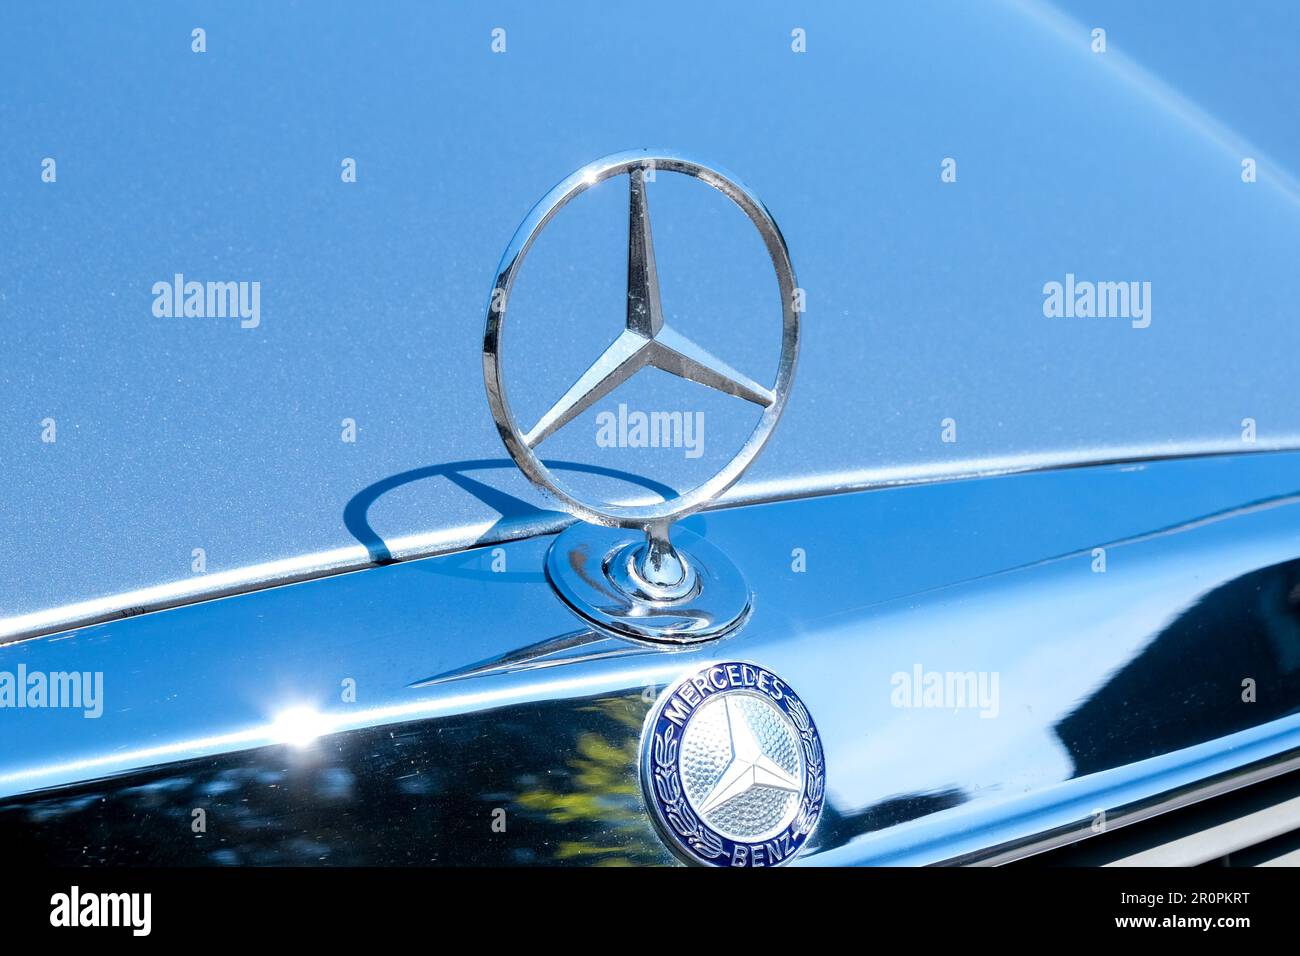 Primo piano del vecchio logo originale in metallo della Mercedes Benz sul cofano dell'auto. Fuoco selettivo del vecchio logo Mercedes. Foto Stock